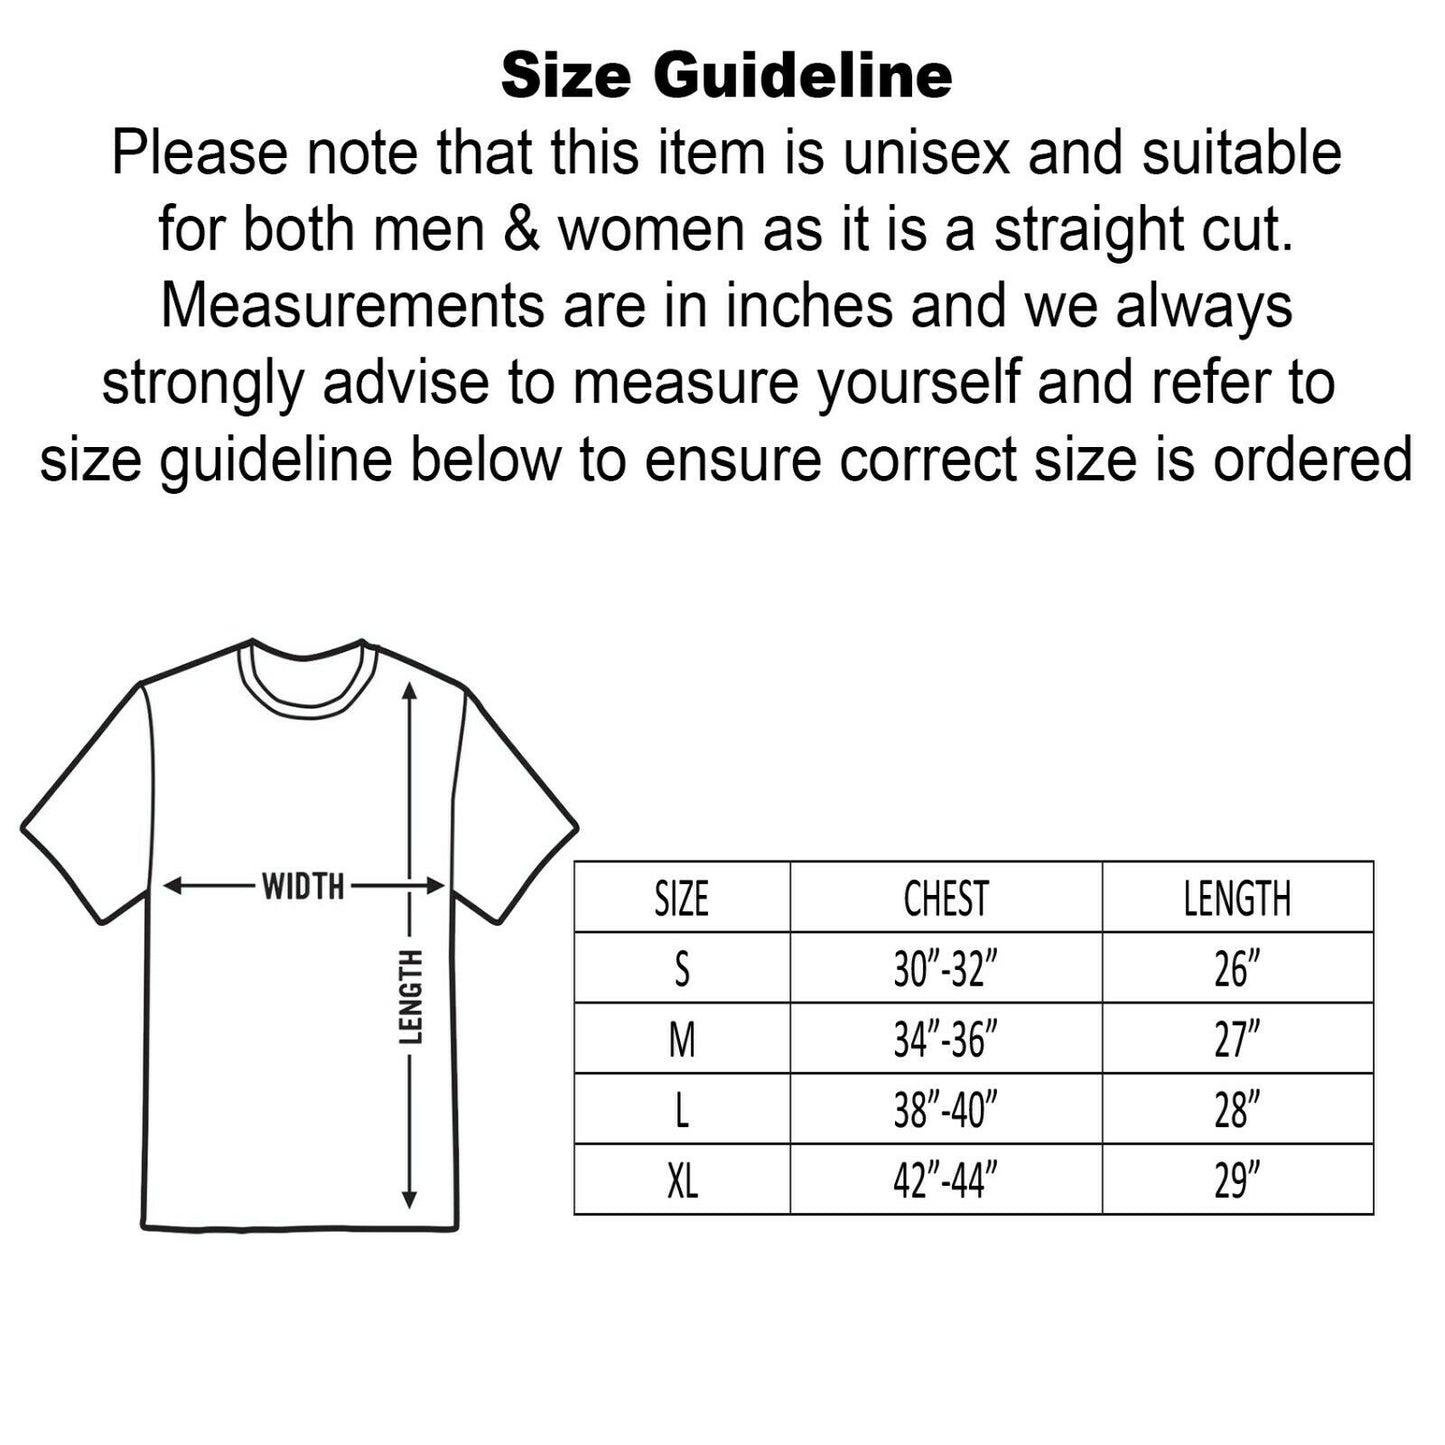 Unisex Freddy Krueger 3/4 Sleeve Baseball T-Shirt